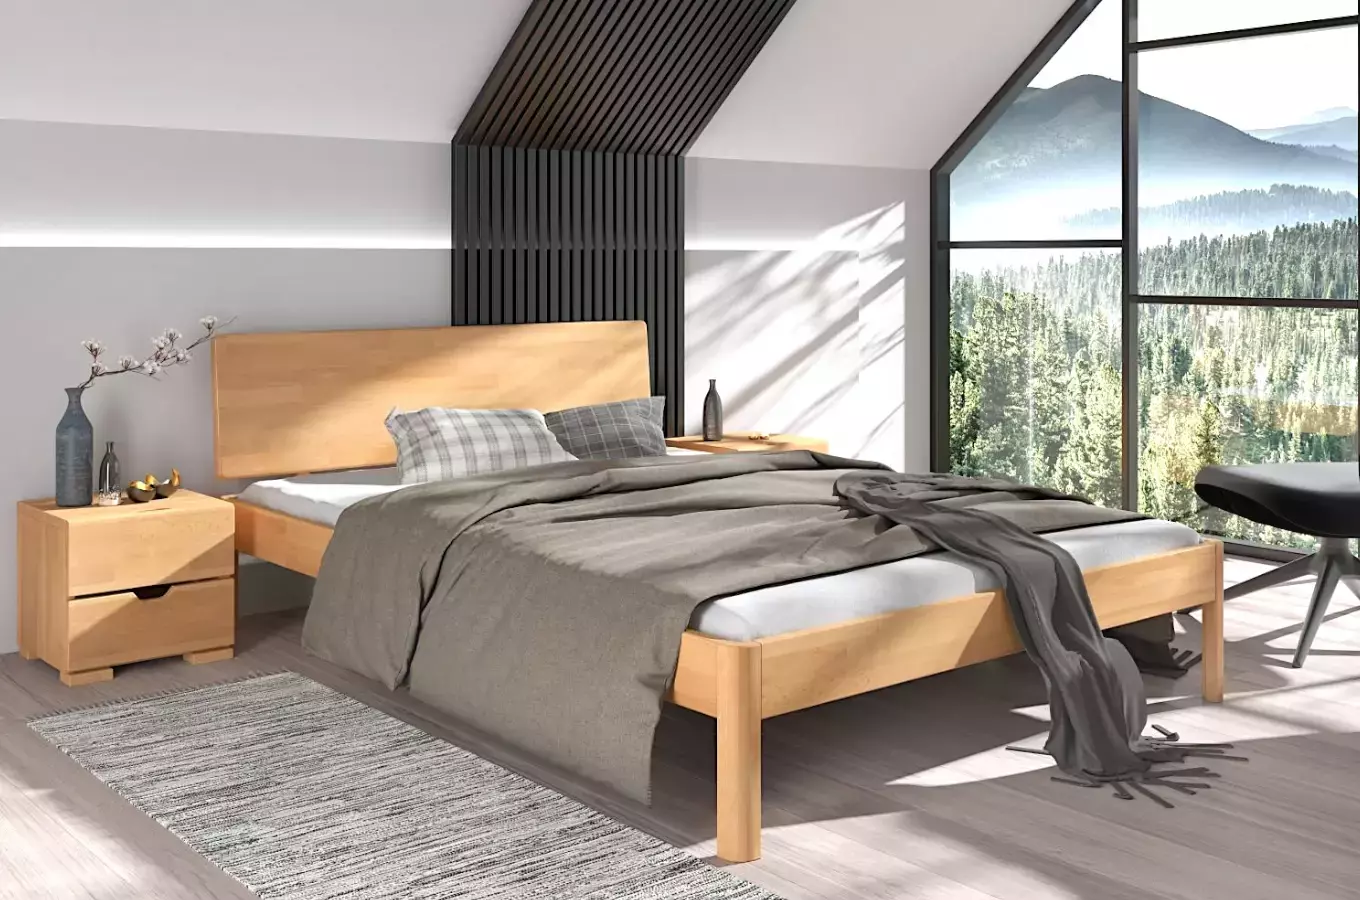 Dřevěná buková postel Visby AMMER